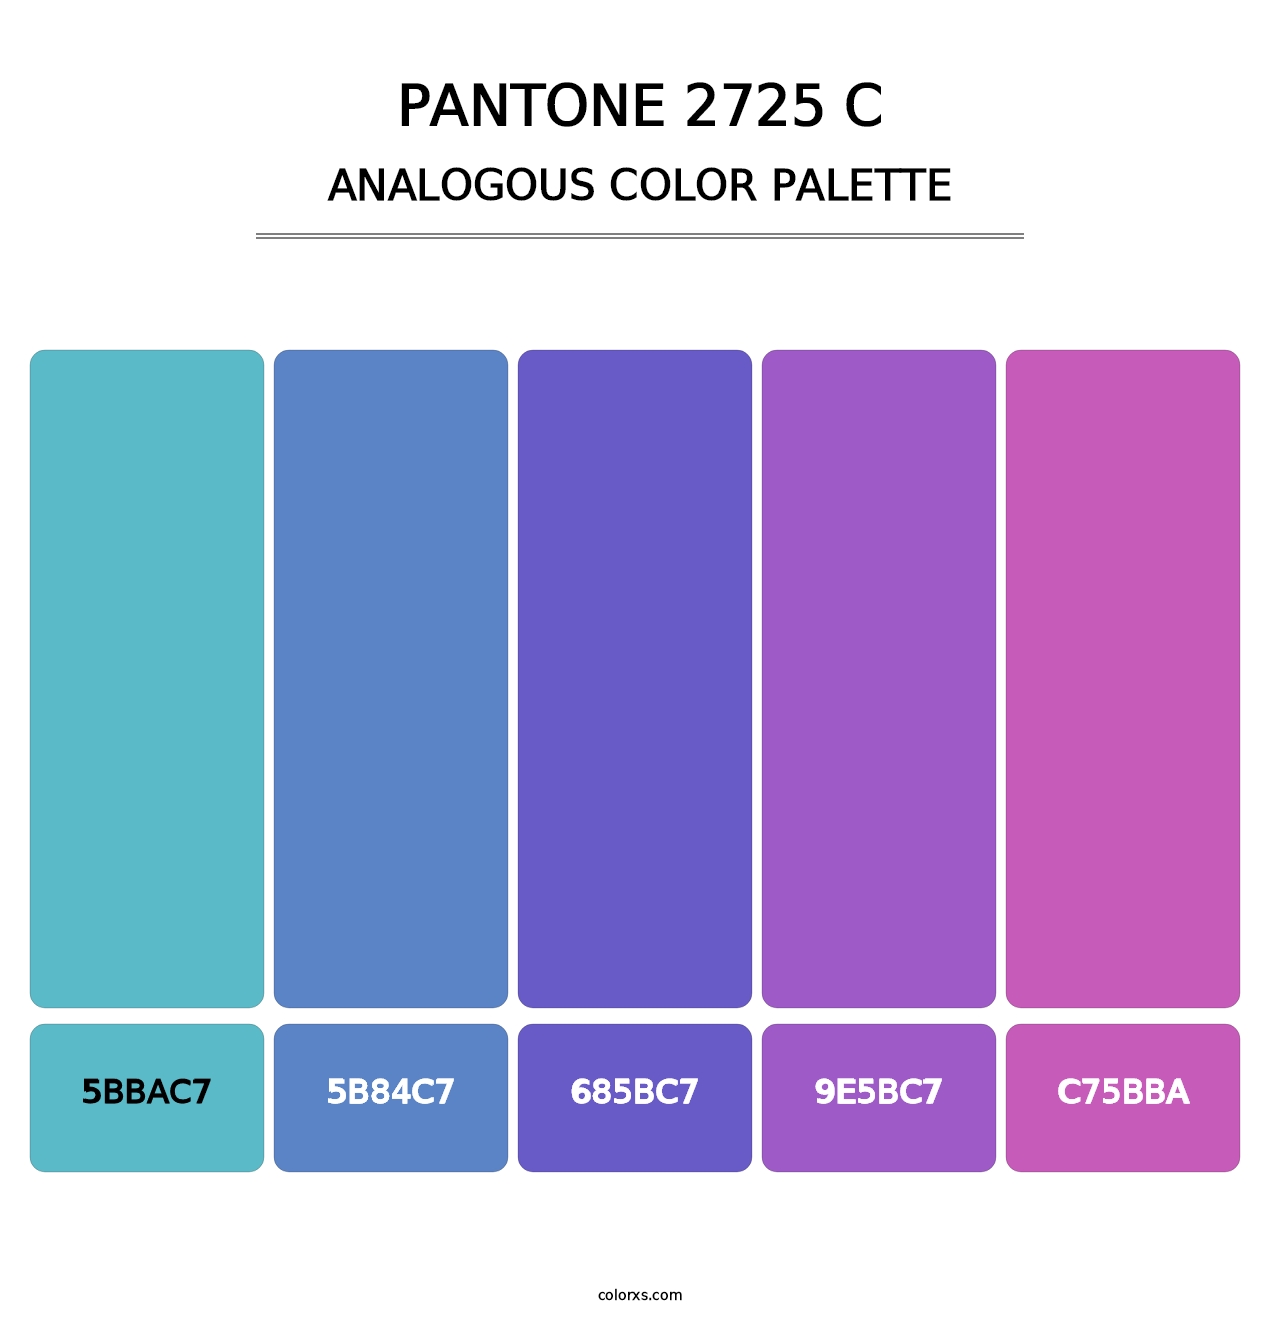 PANTONE 2725 C - Analogous Color Palette